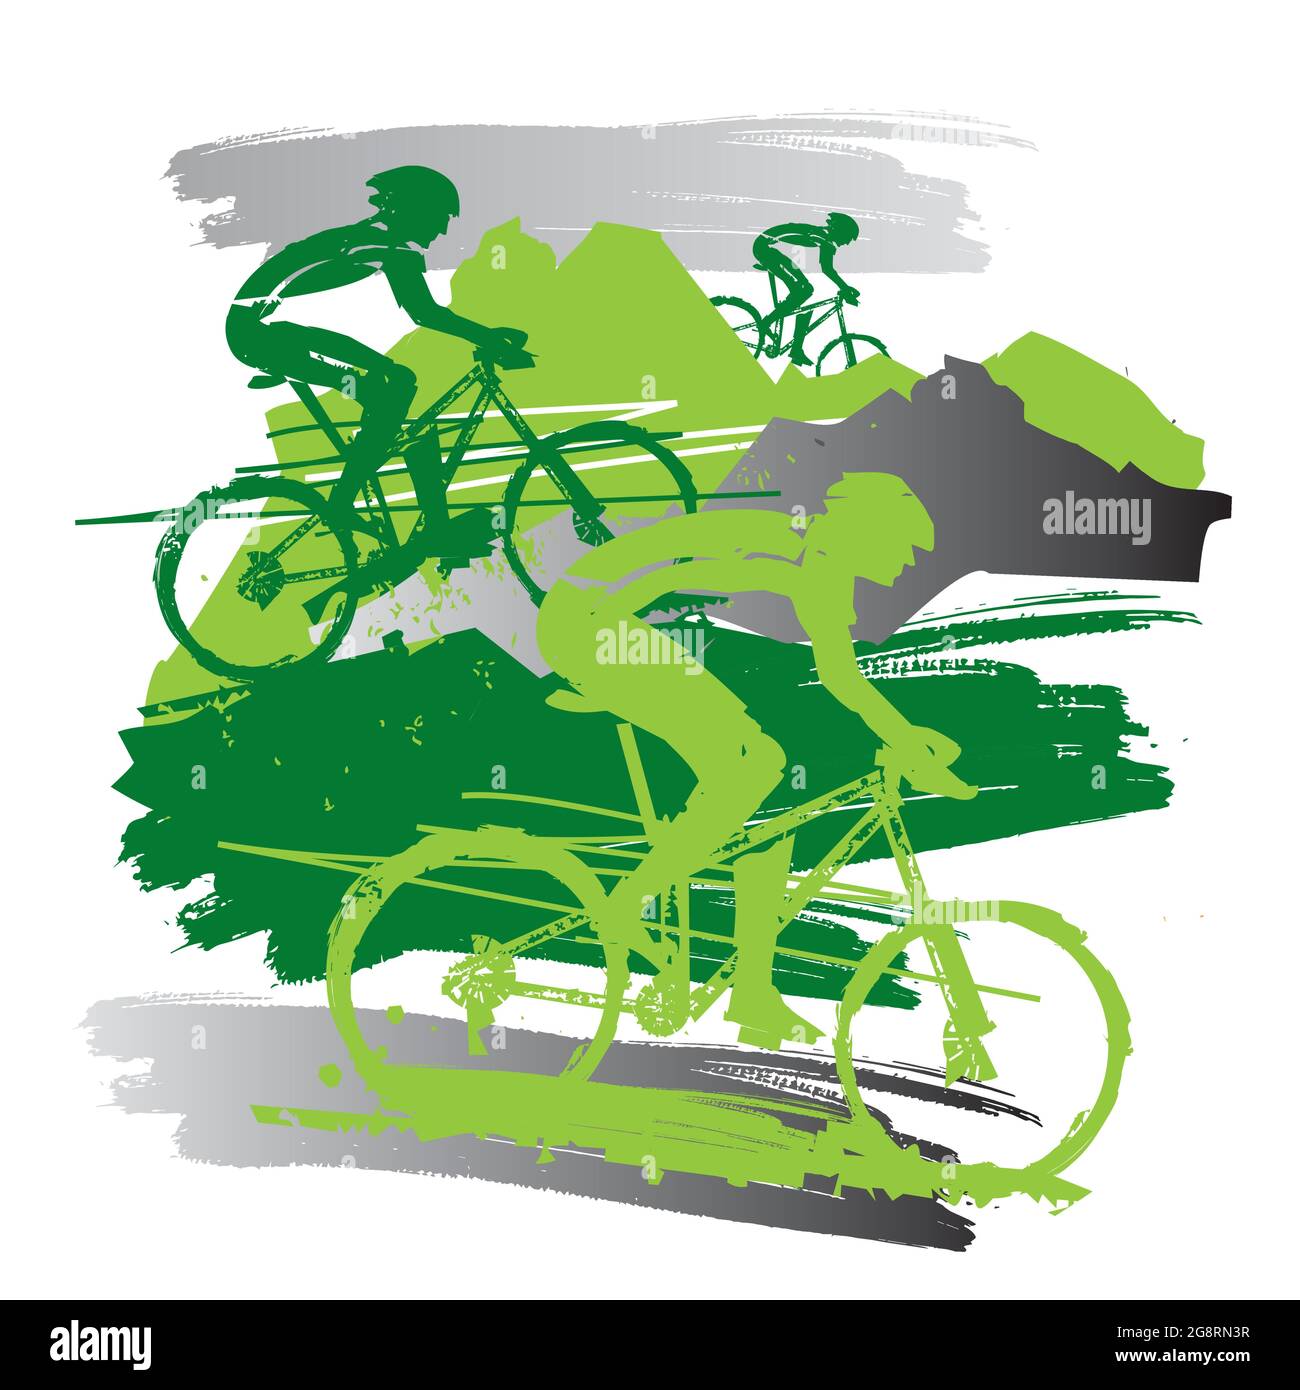 Mountain bike, escursione in montagna. Grunge espressivo illustrazione stilizzata dei ciclisti di mountain bike. Vettore disponibile. Illustrazione Vettoriale